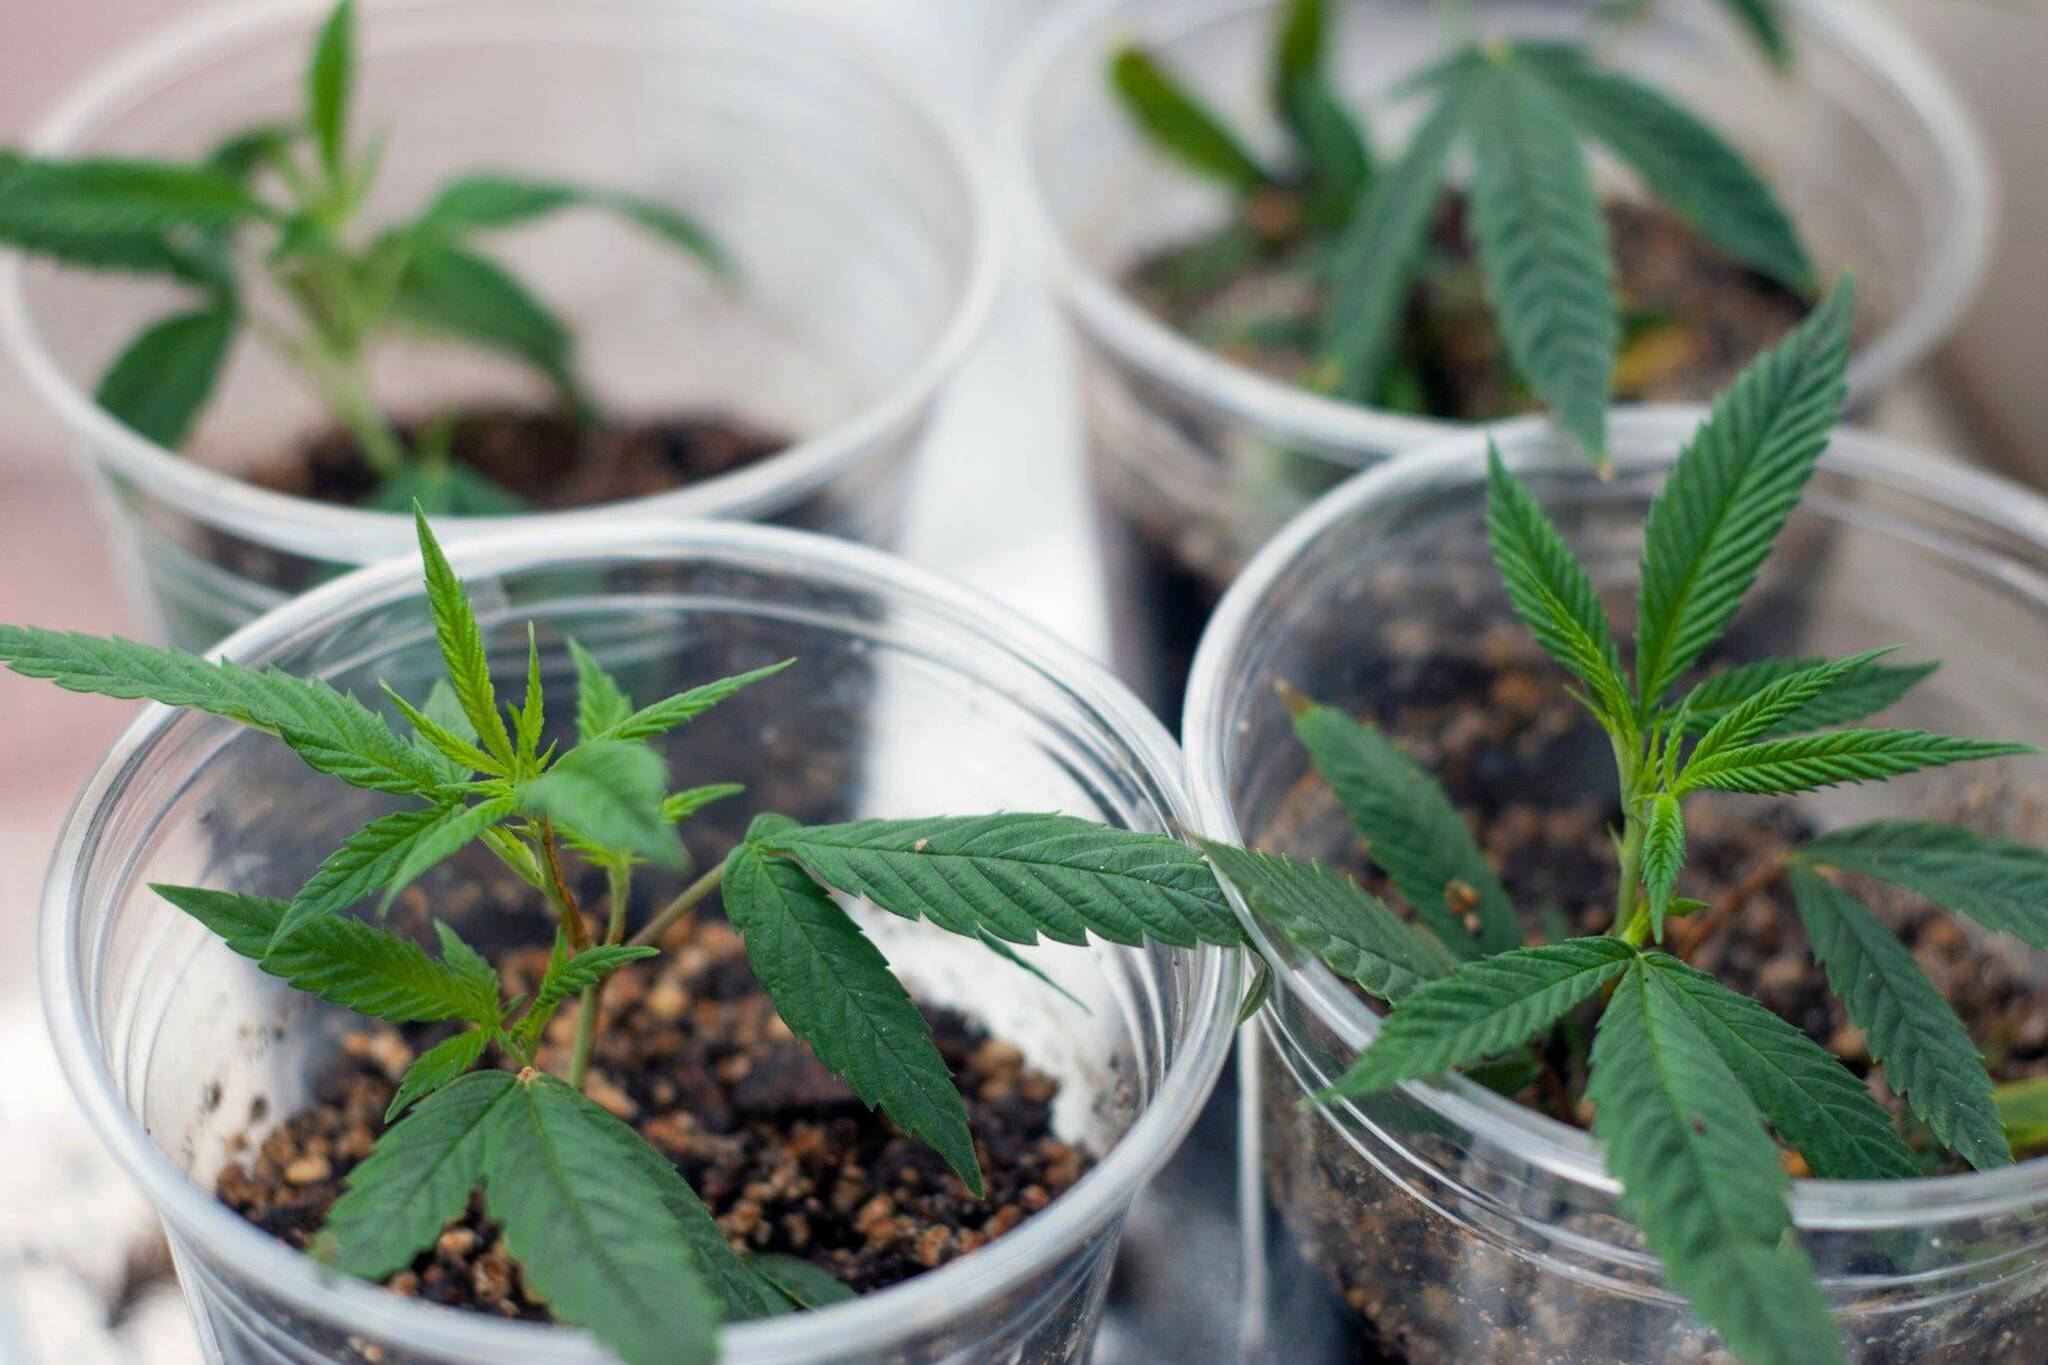 Beginners Guide To Growing Marijuana - Potguide.com